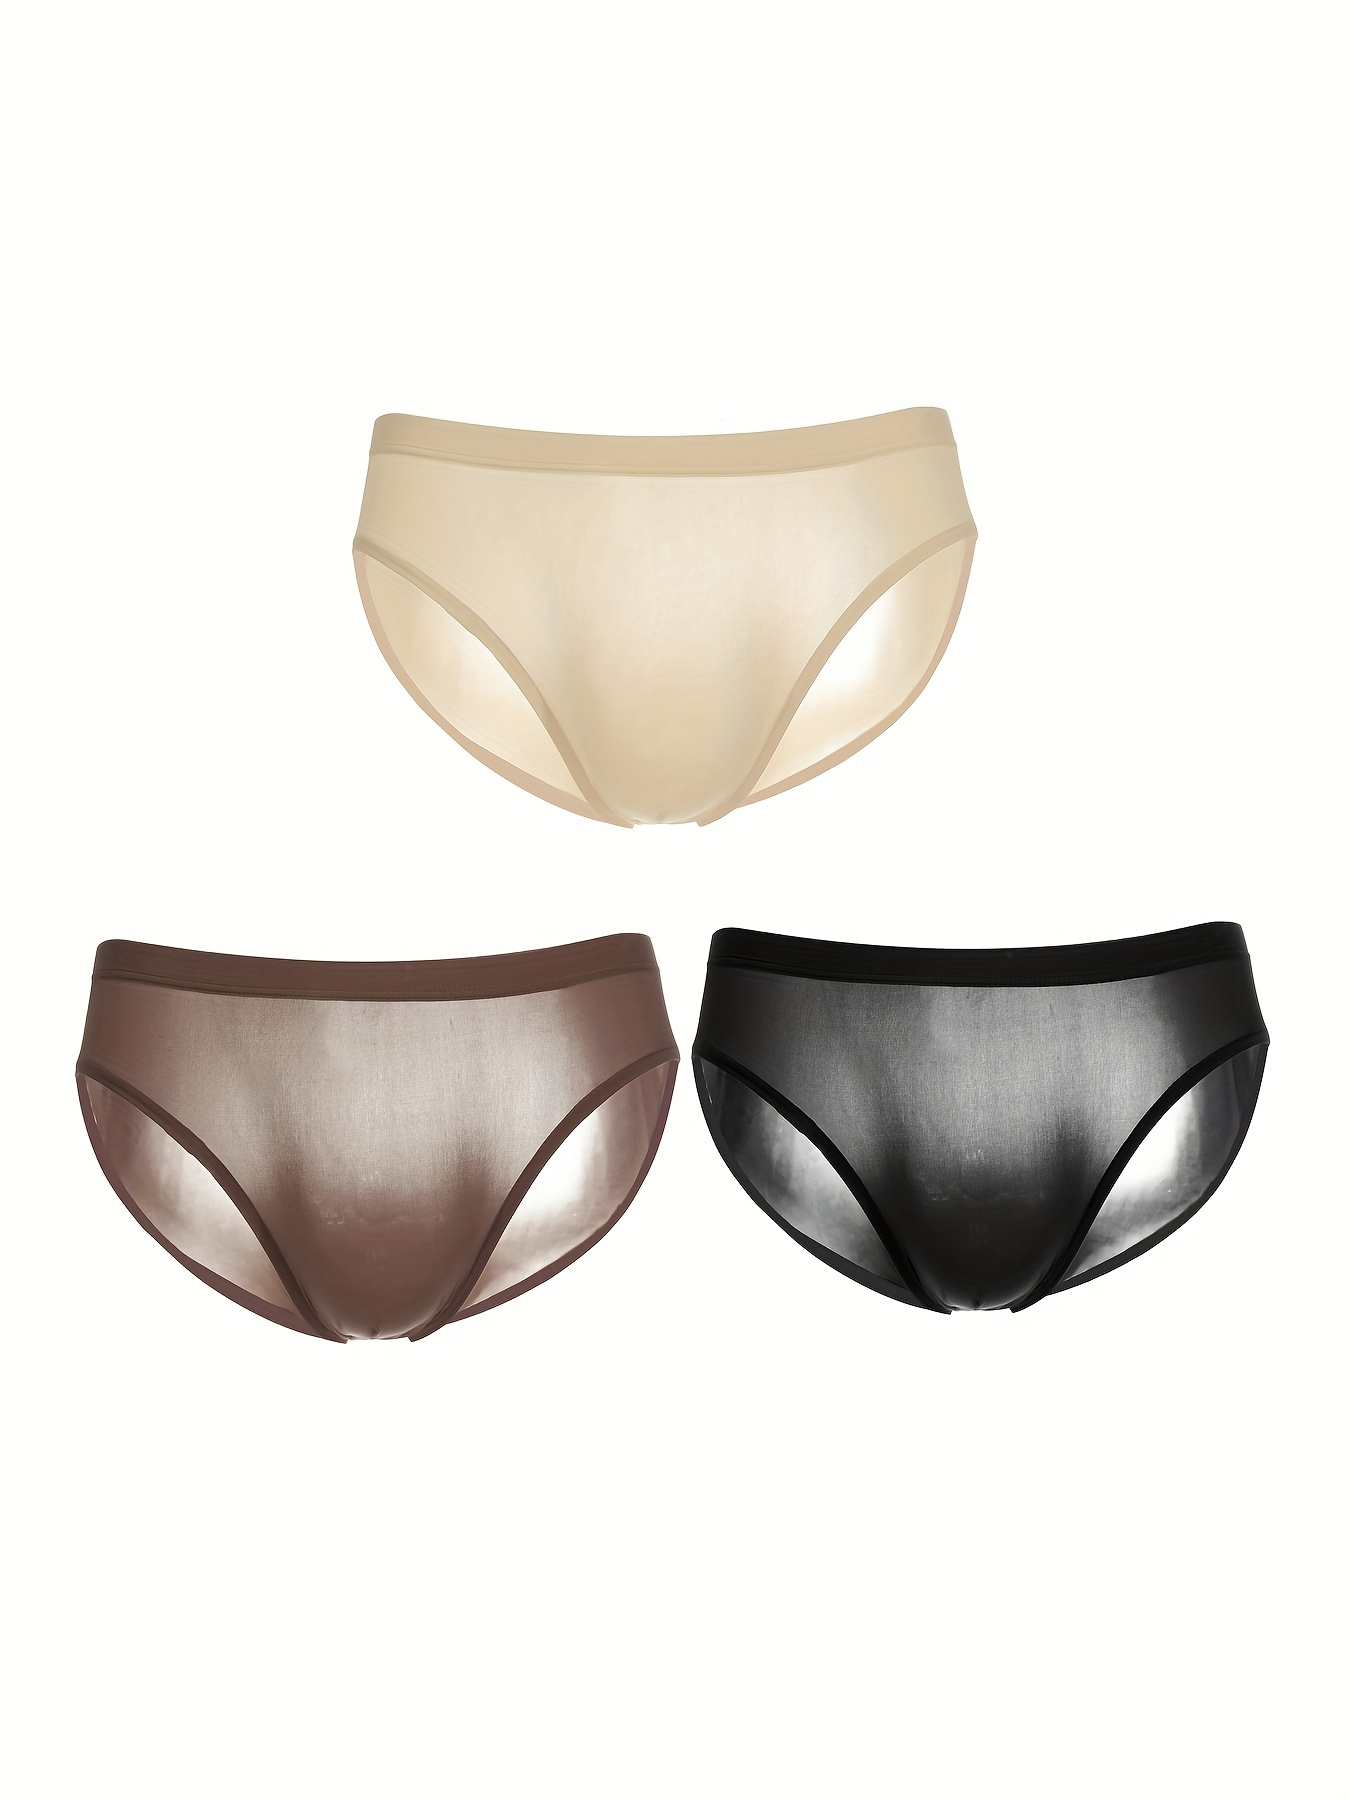 Men Underwear Briefs Ice Silk Panites Sexy Sheer Solid Color